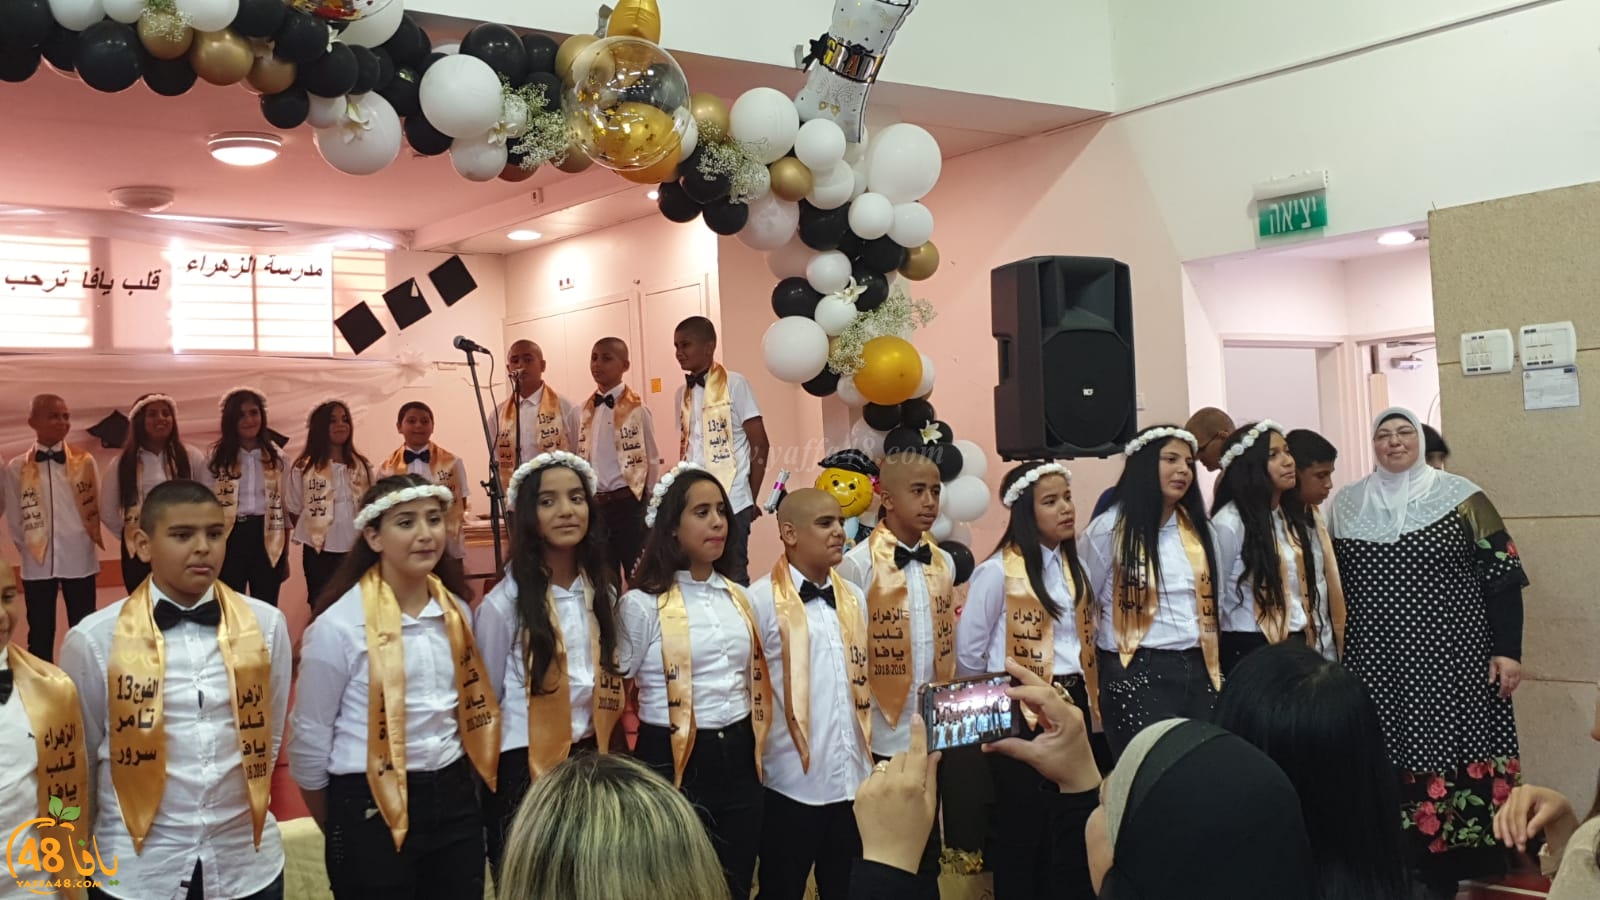 بالفيديو: مدرسة الزهراء الابتدائية بيافا تحتفل بتخريج طلابها ضمن الفوج الـ13 والأخير